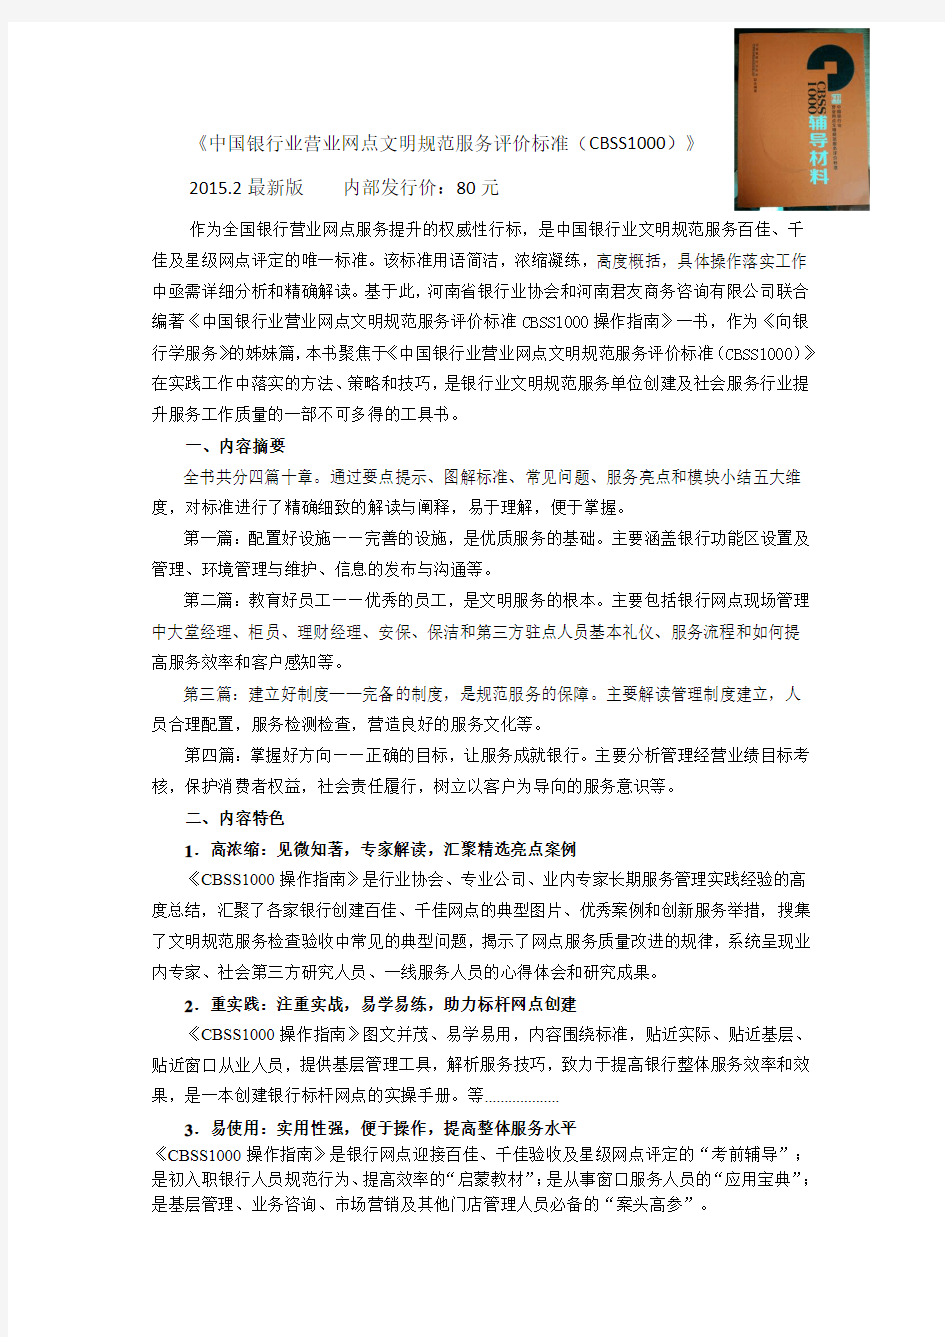 《中国银行业营业网点文明规范服务评价标准(CBSS1000)》